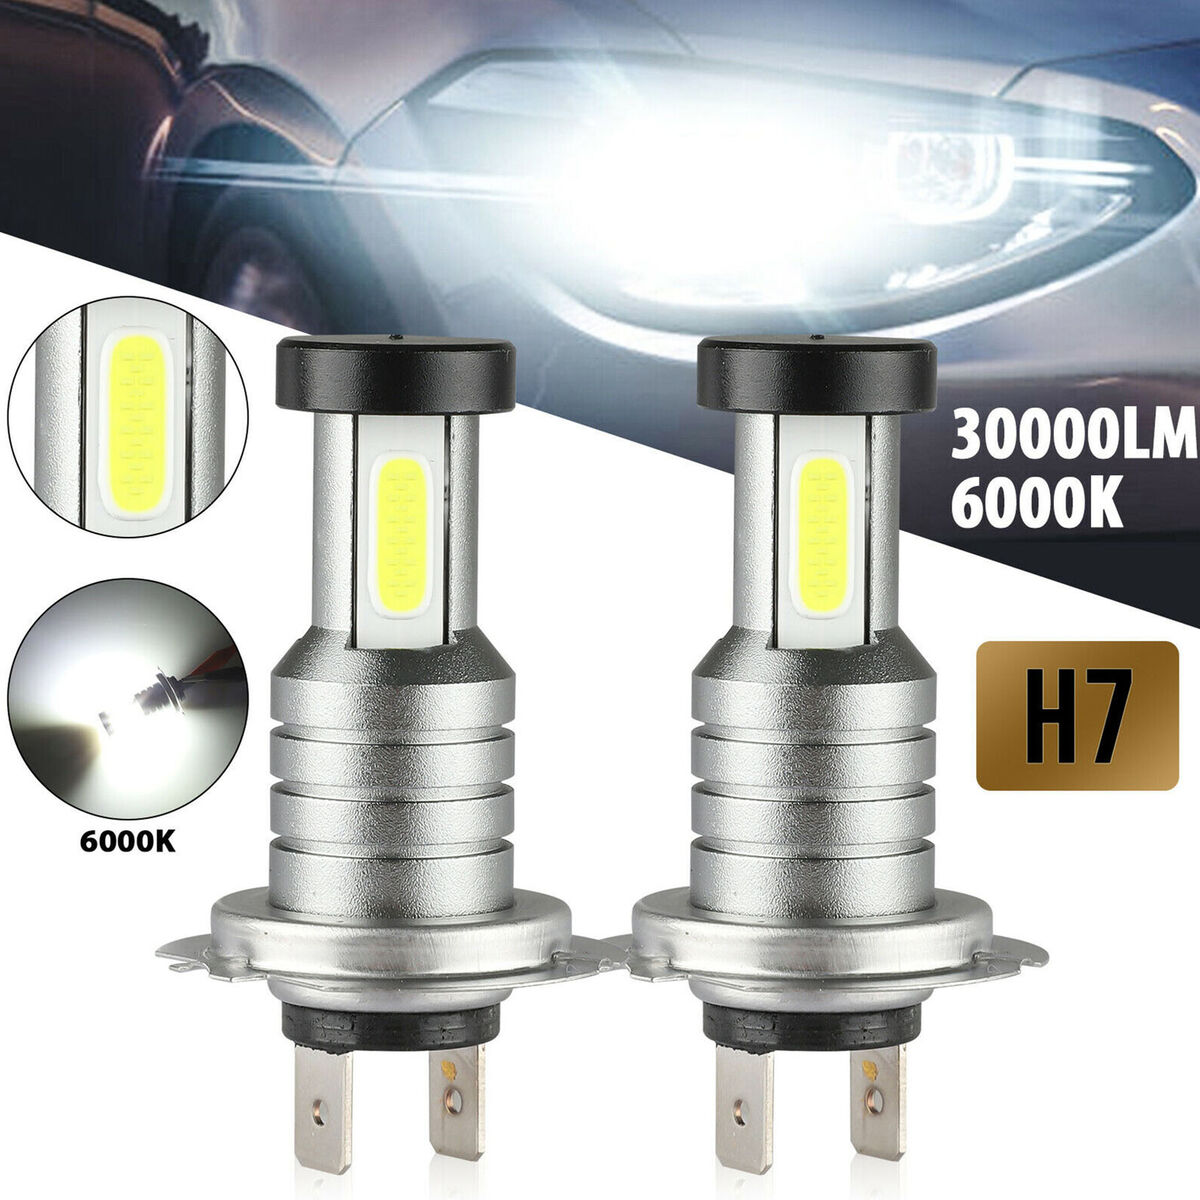  Ampoules de phares à LED S2 H7 18W 1800lm 6500K 2 COB LED  étanche IP67 phare de voiture Lampes, DC 9-32V (lumière blanche) (2 PCS)  (Color : White Light)